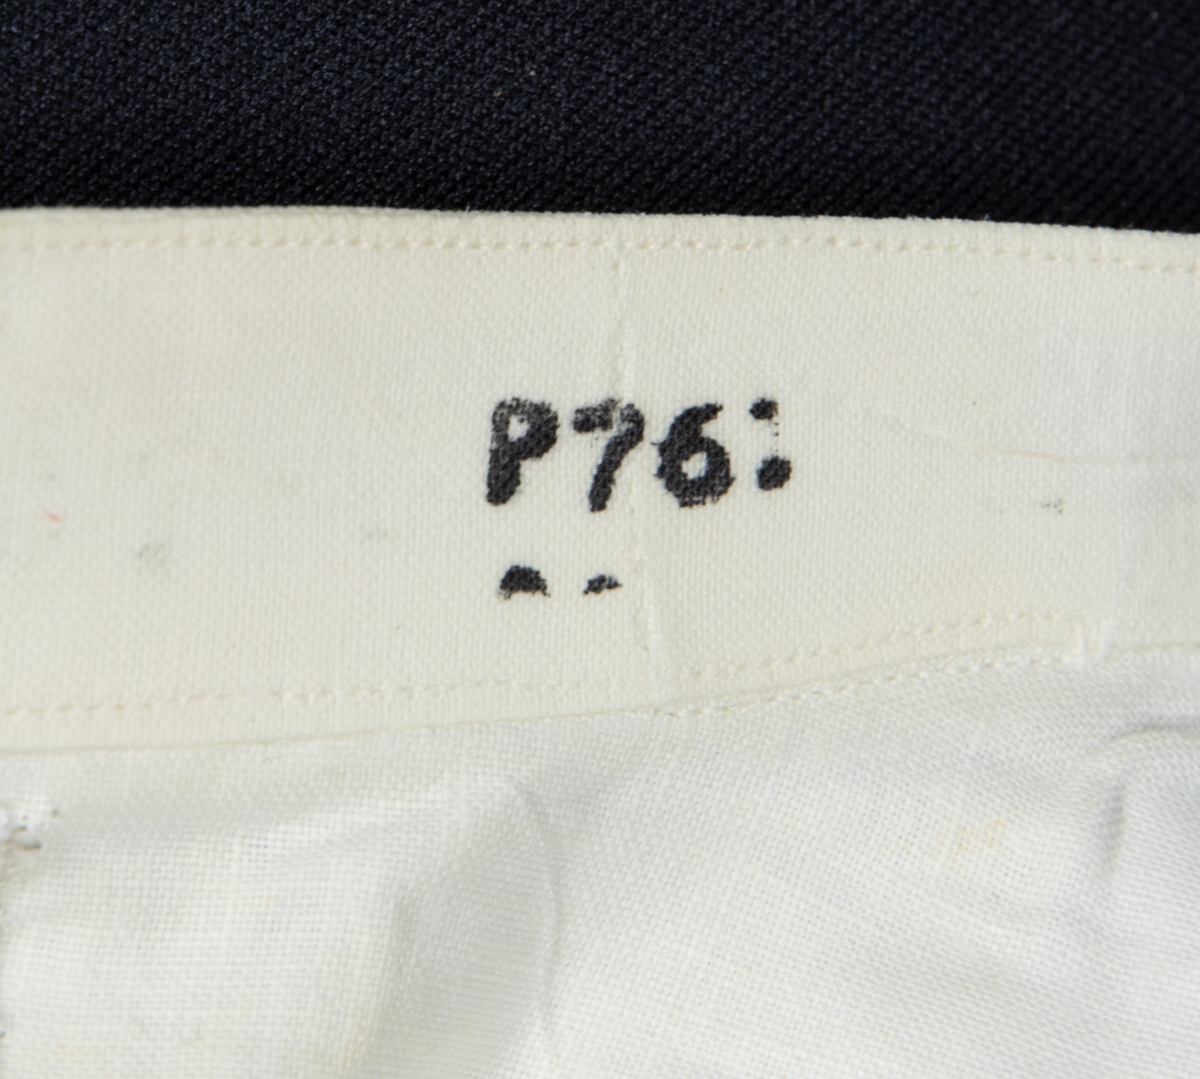 Uniform FV Stärkskjorta till paraduniform.
X: Frackskjortans storlek är ungefär 40 men den är troligen måttsydd. Kraginfästningen är märkt P 76. Löskrage.